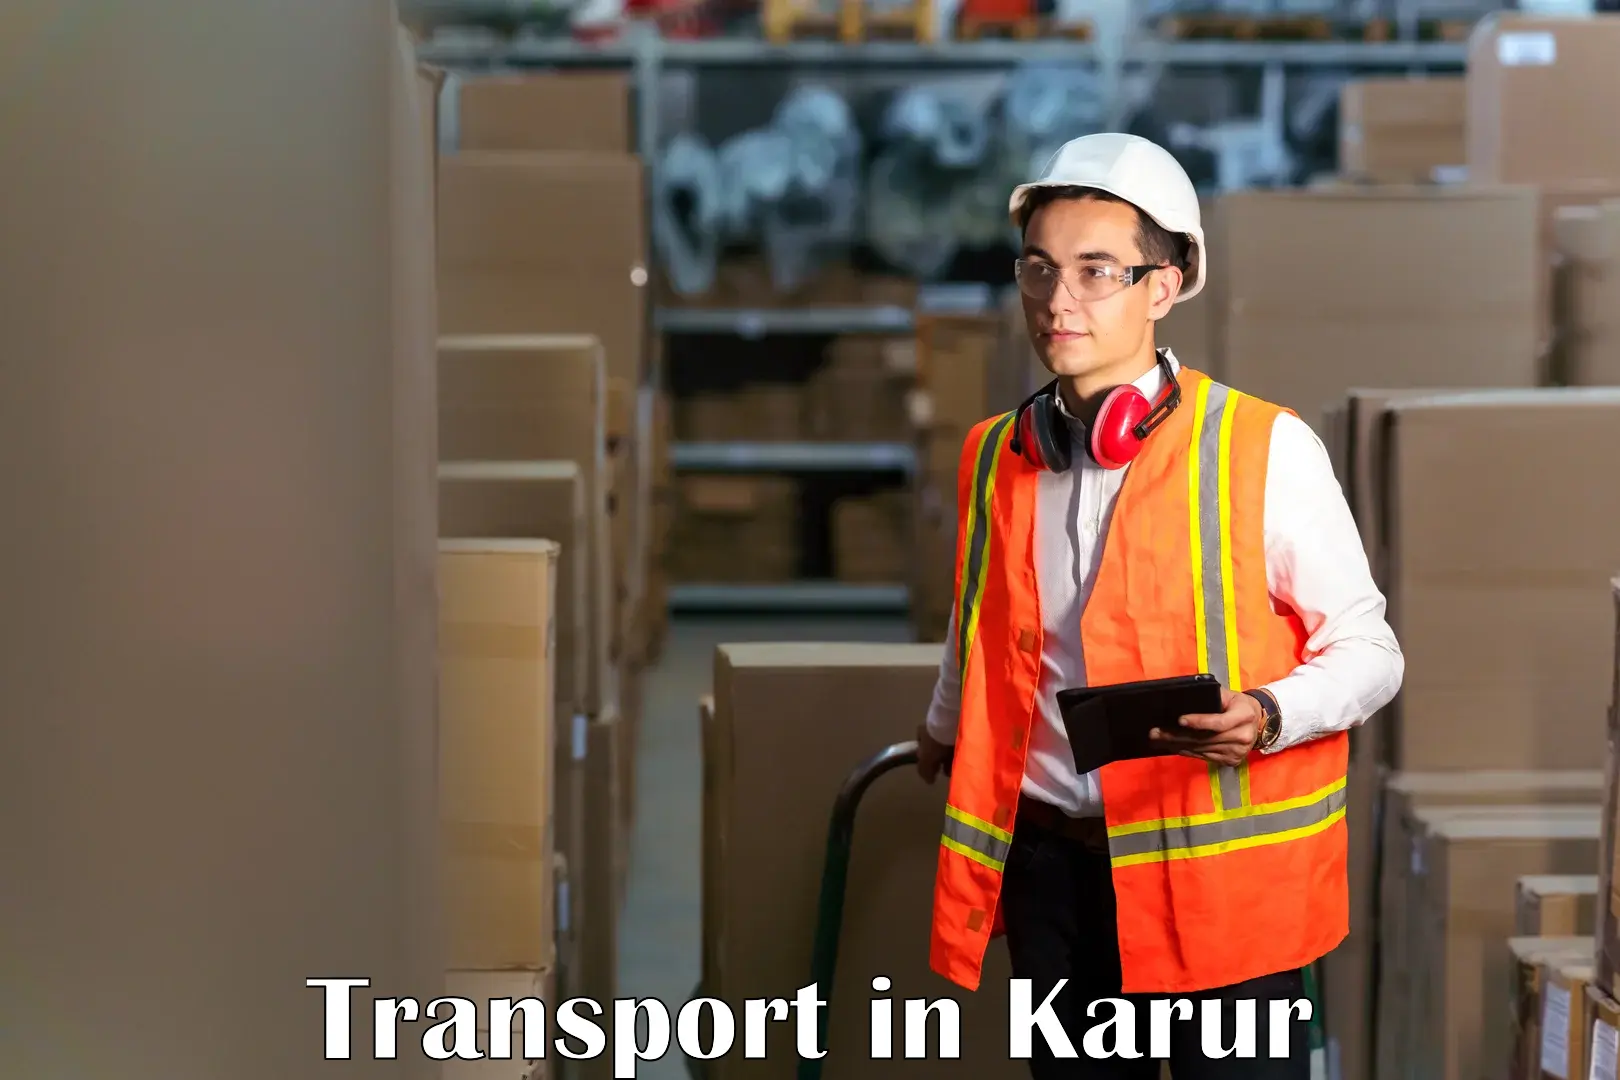 Road transport online services in Karur